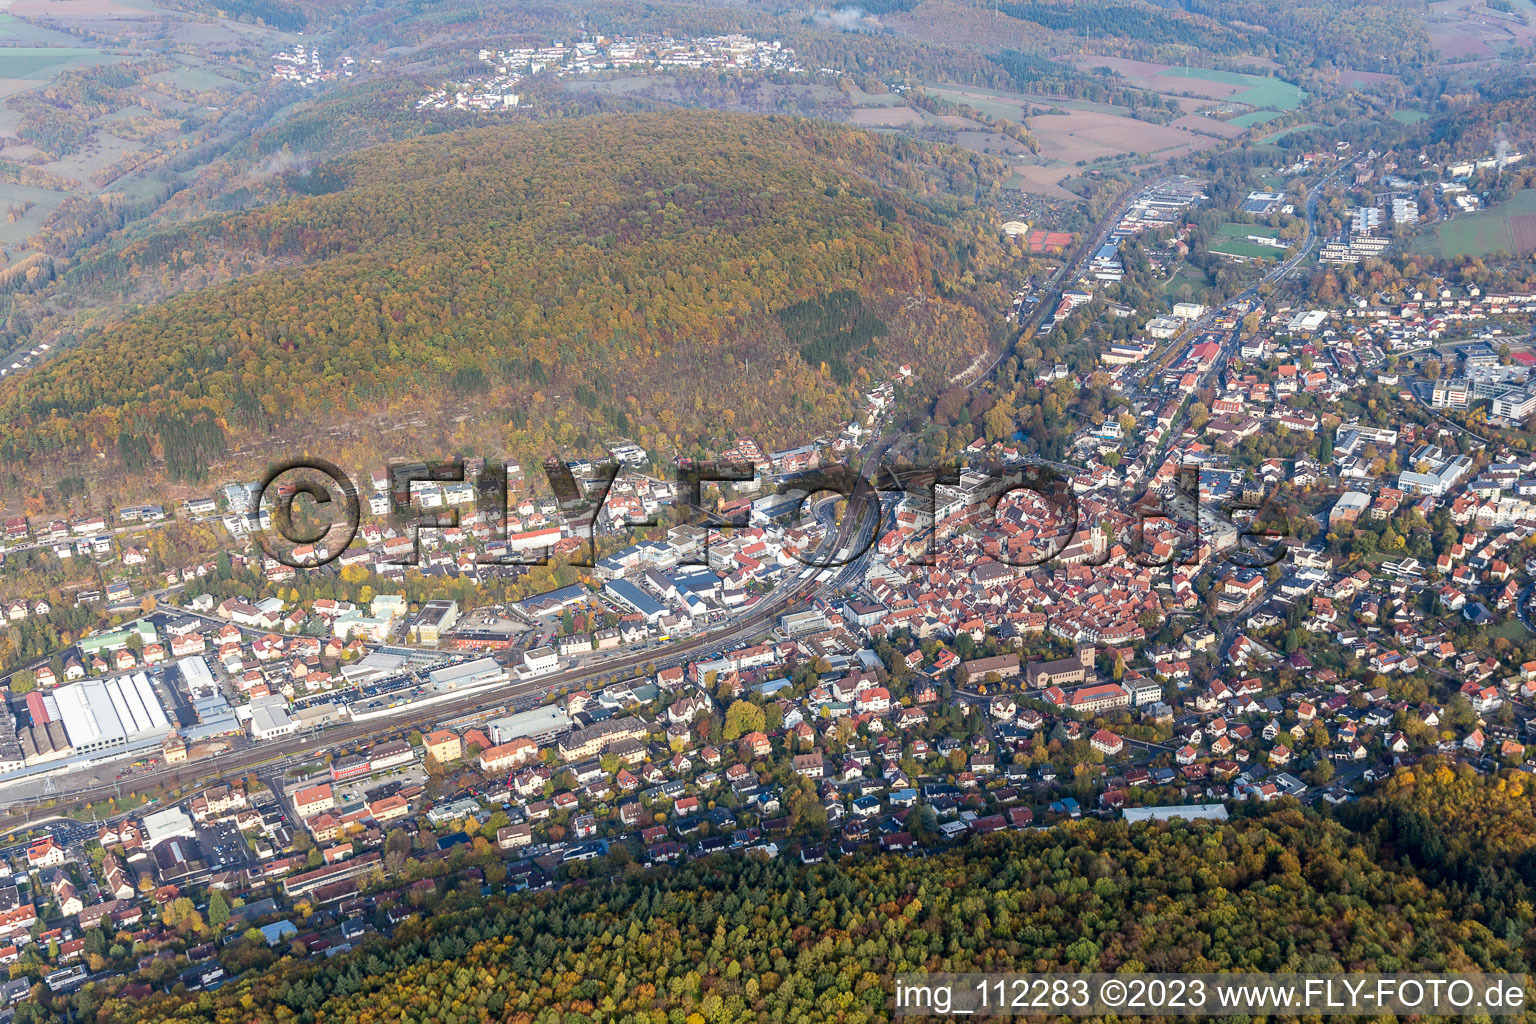 Luftbild von Mosbach im Bundesland Baden-Württemberg, Deutschland